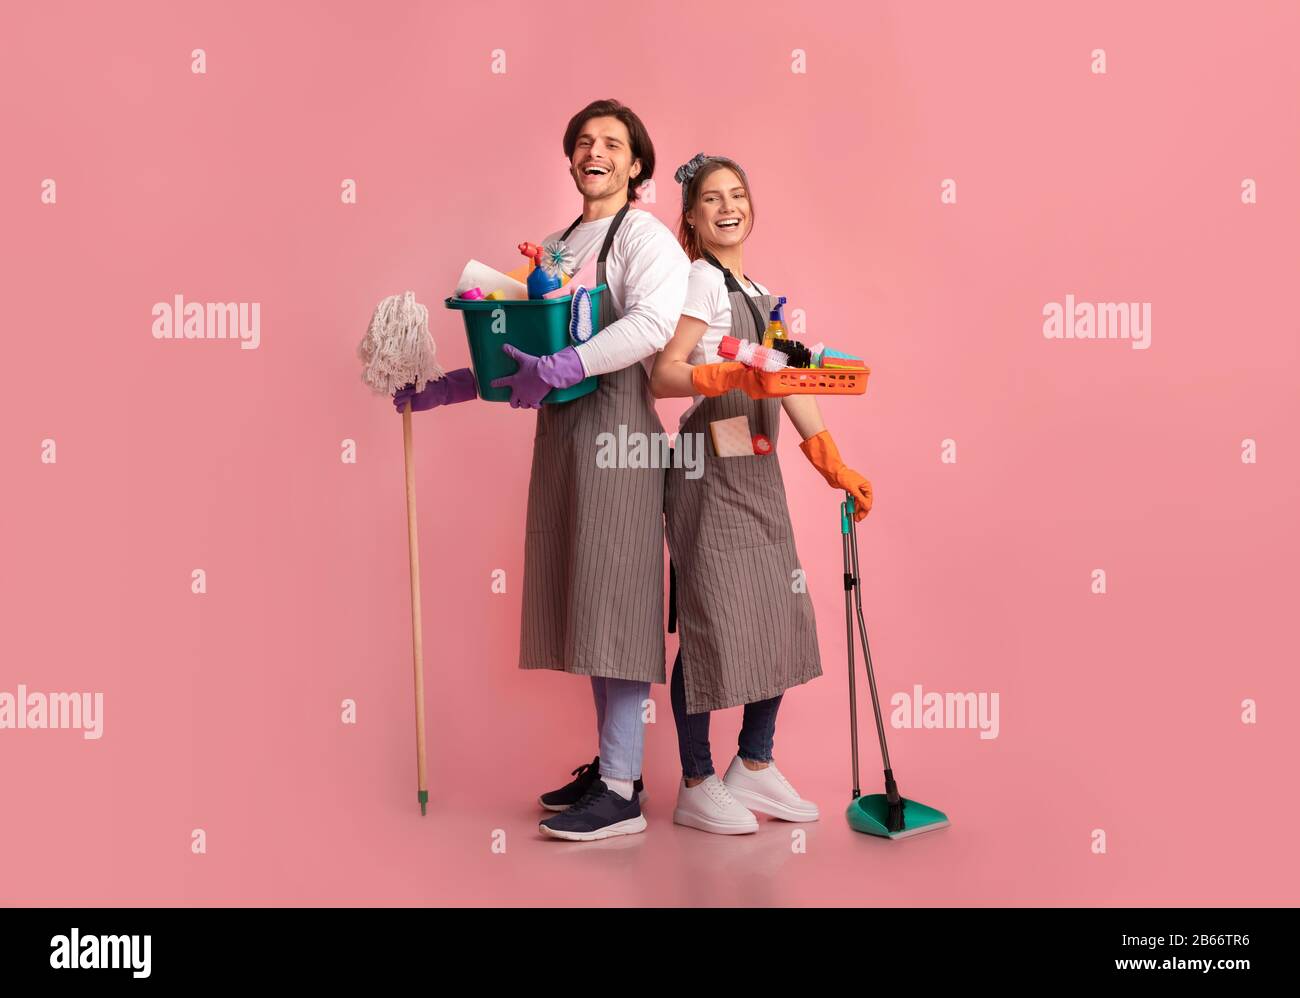 Glückliches junges Paar mit vielen Waschmitteln, die über rosafarbenem Hintergrund posieren Stockfoto